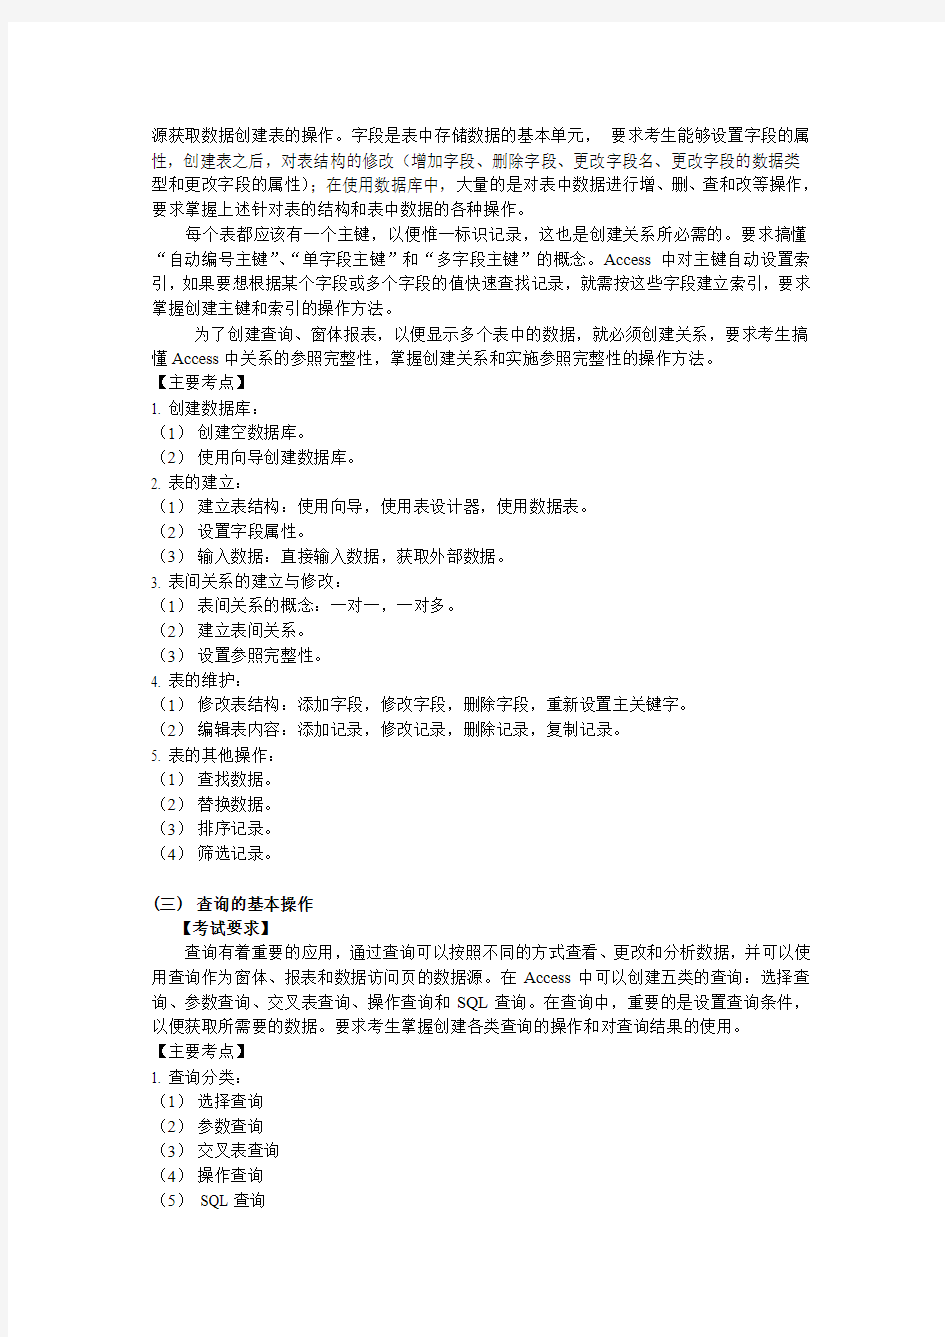 广东省计算机等级考试二级《Access数据库》考试大纲及样题